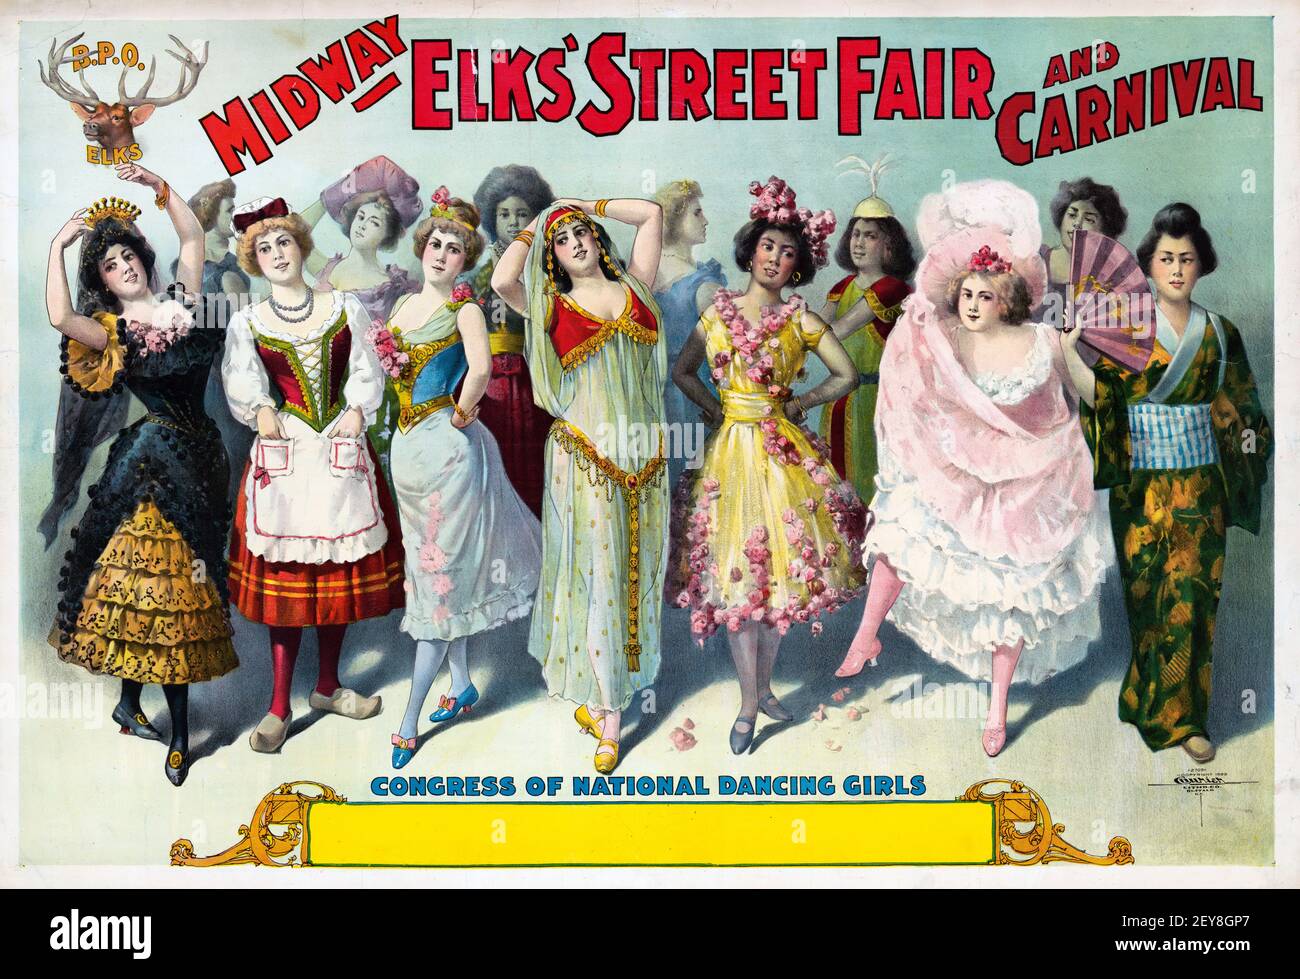 Midway Elks' Street Fair und Karneval. Kongress der nationalen tanzenden Mädchen. Klassisches Plakat, alt und vintage Stil. Stockfoto